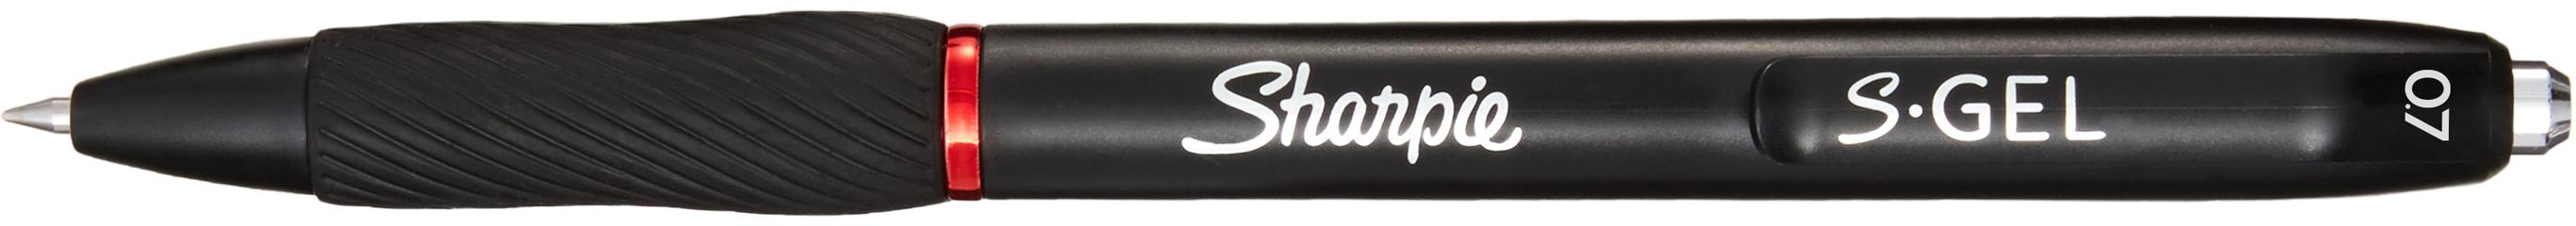 SHARPIE Stylo Gel 0.7mm 2136599 rouge